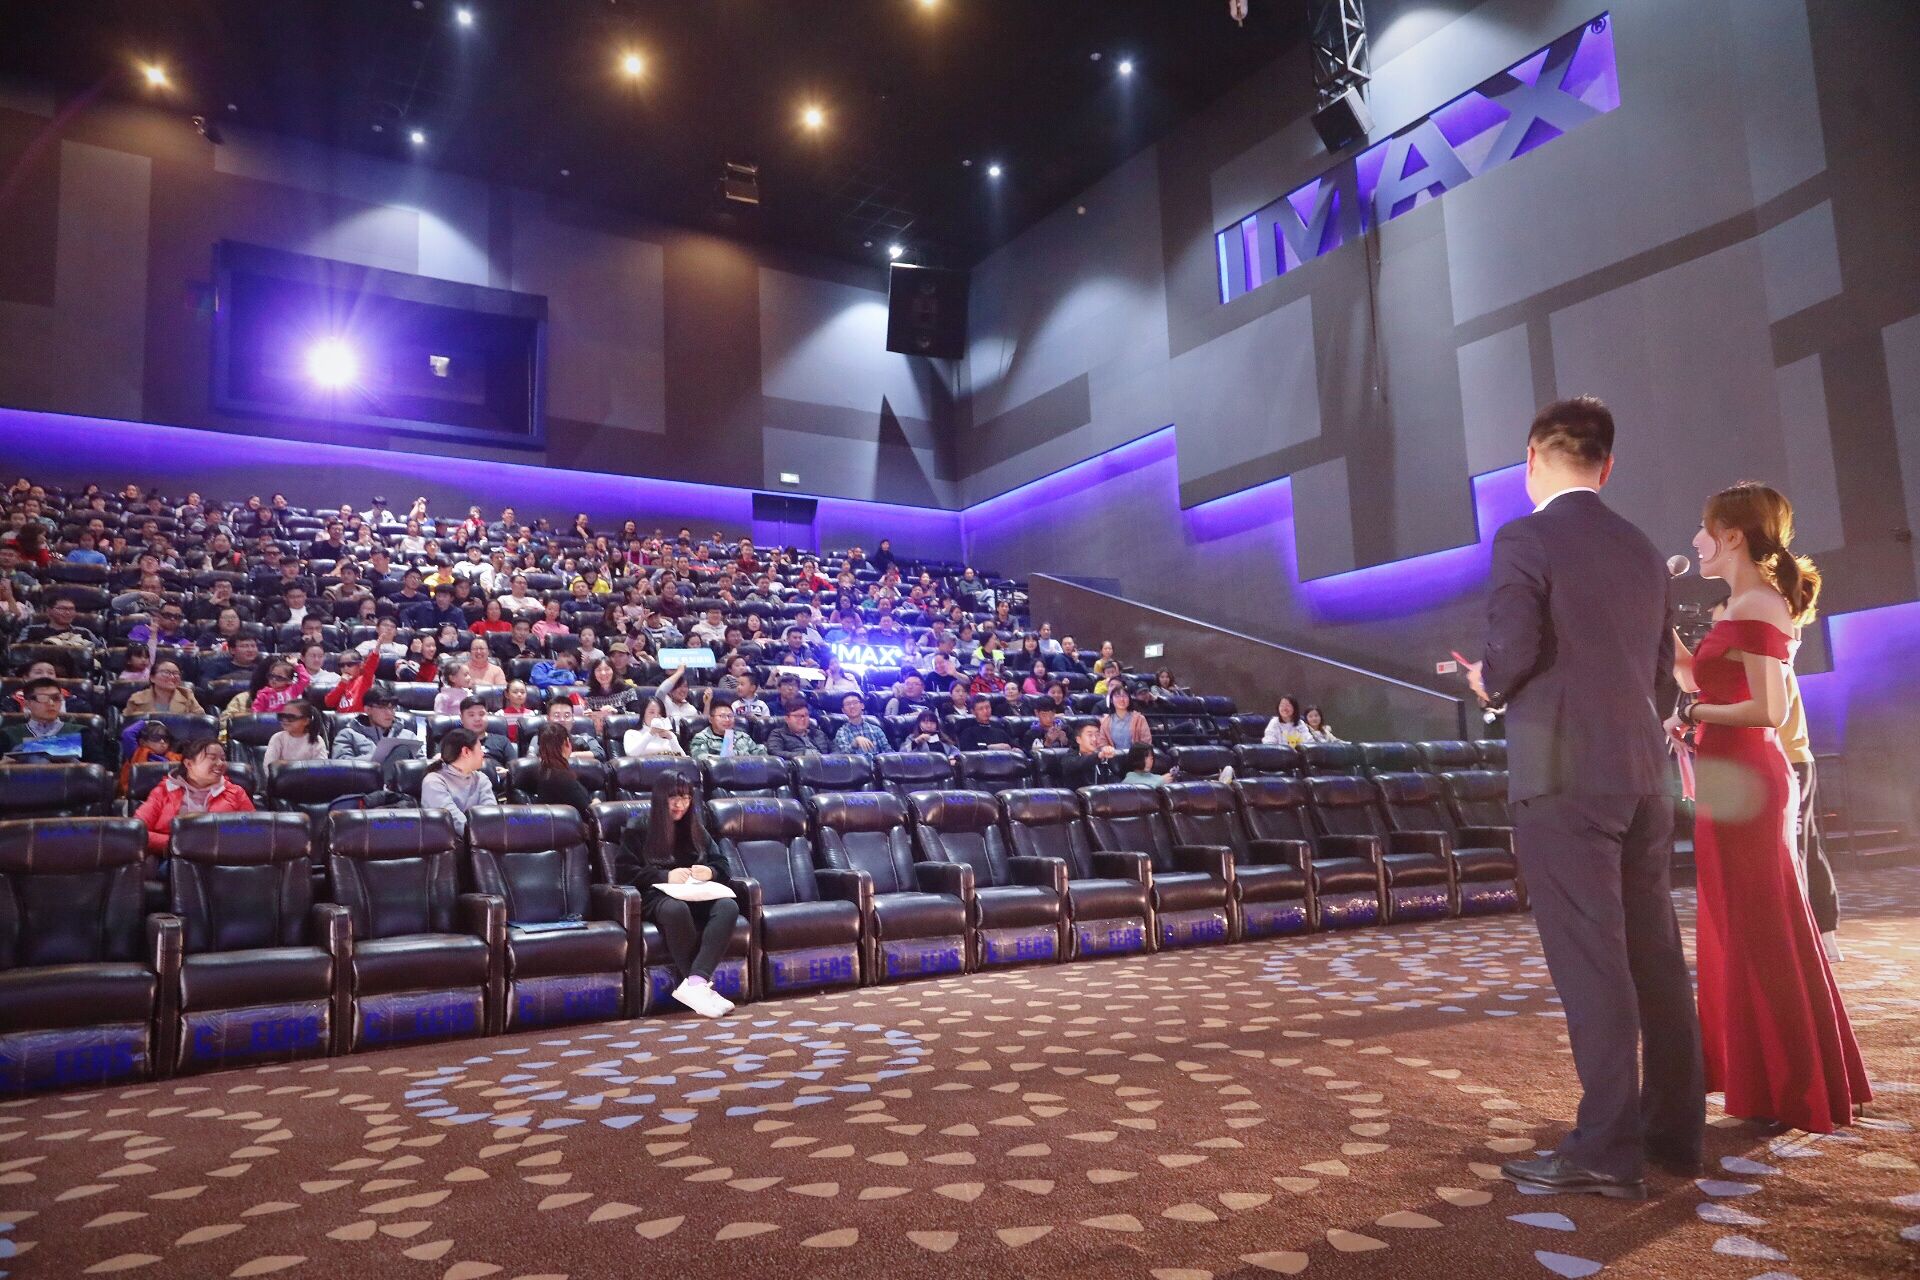 济南高新万达影城imax影院重新开业imax新一代激光让观众尽情体验冰雪